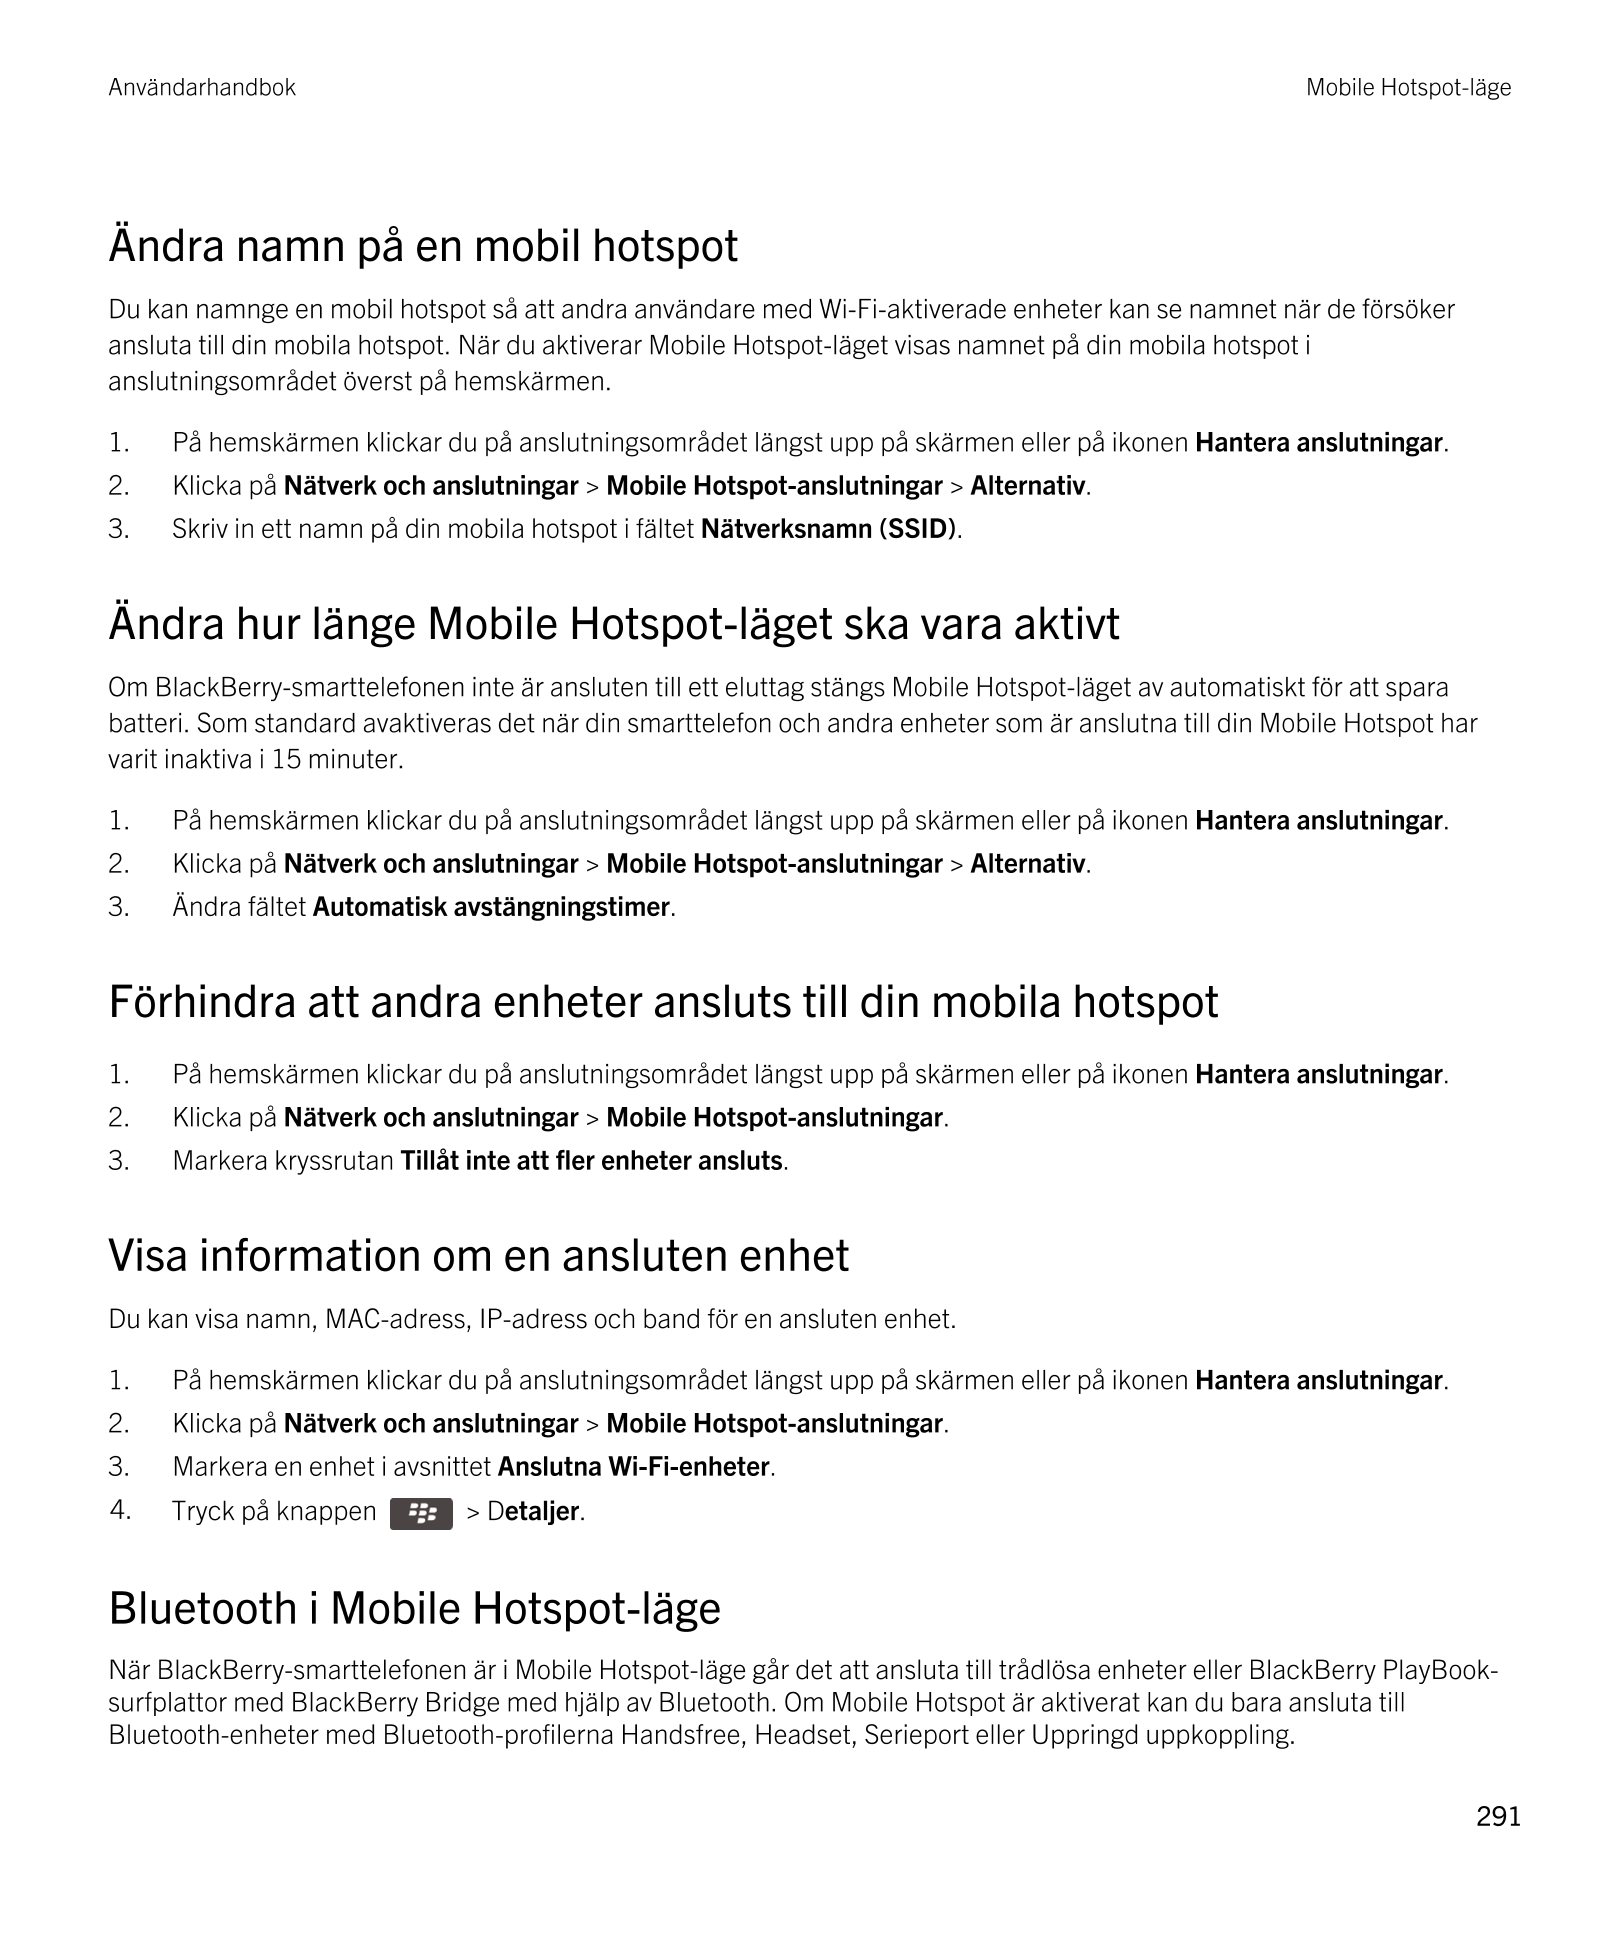 Användarhandbok Mobile Hotspot-läge
Ändra namn på en mobil hotspot
Du kan namnge en mobil hotspot så att andra användare med  Wi